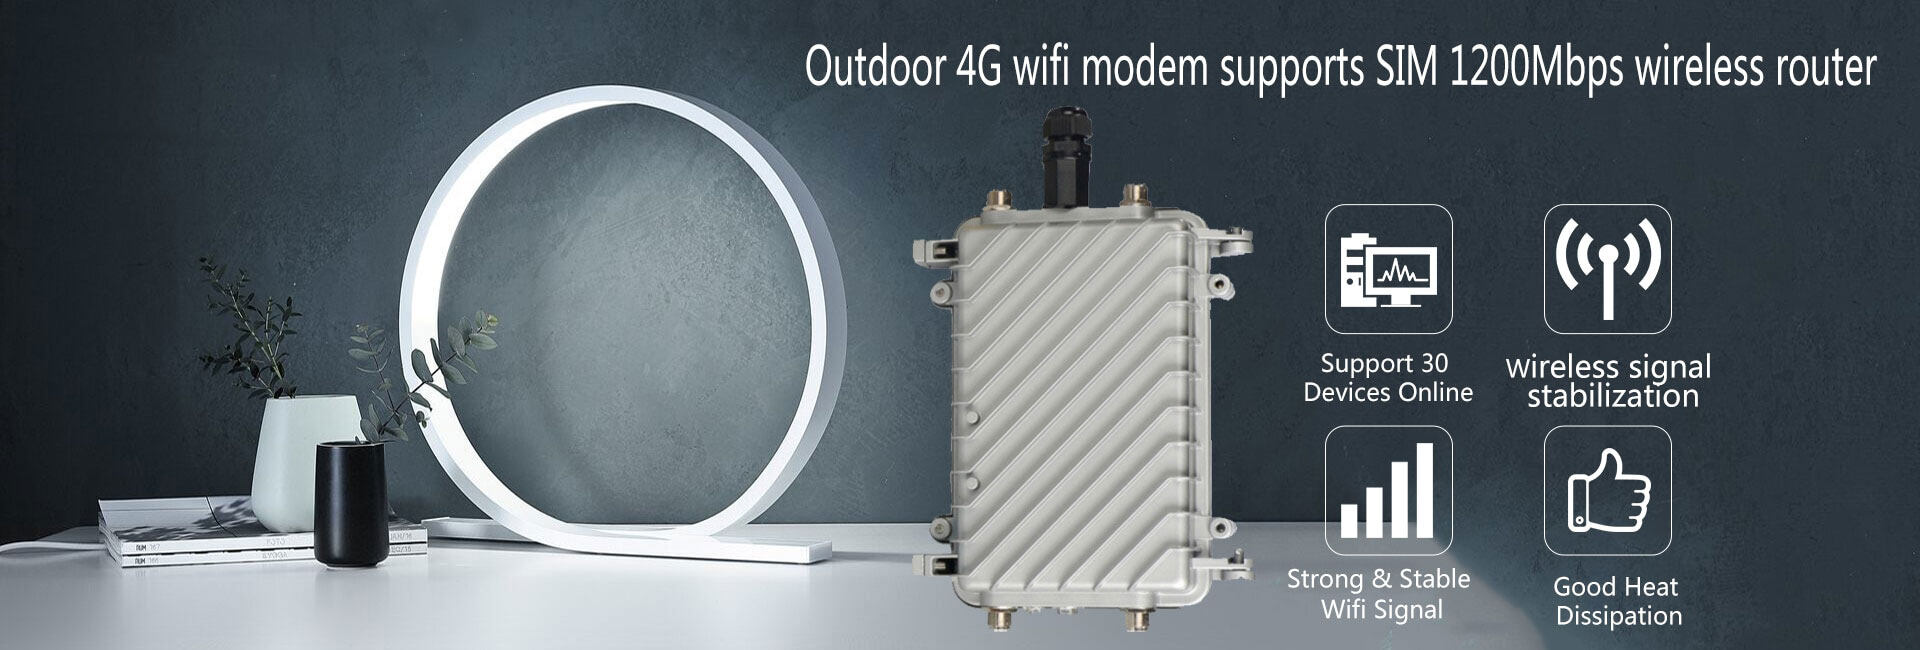 รายละเอียดเพิ่มเติมเกี่ยวกับ 【กรุงเทพจัดส่งที่รวดเร็ว】เราเตอร์ใส่ซิม 5G เราเตอร์ เร้าเตอร์ใสซิม 4g router ราวเตอร์wifi ราวเตอร์ใส่ซิม ใส่ซิมปล่อย Wi-Fi 300Mbps 4G LTE sim card Wireless route